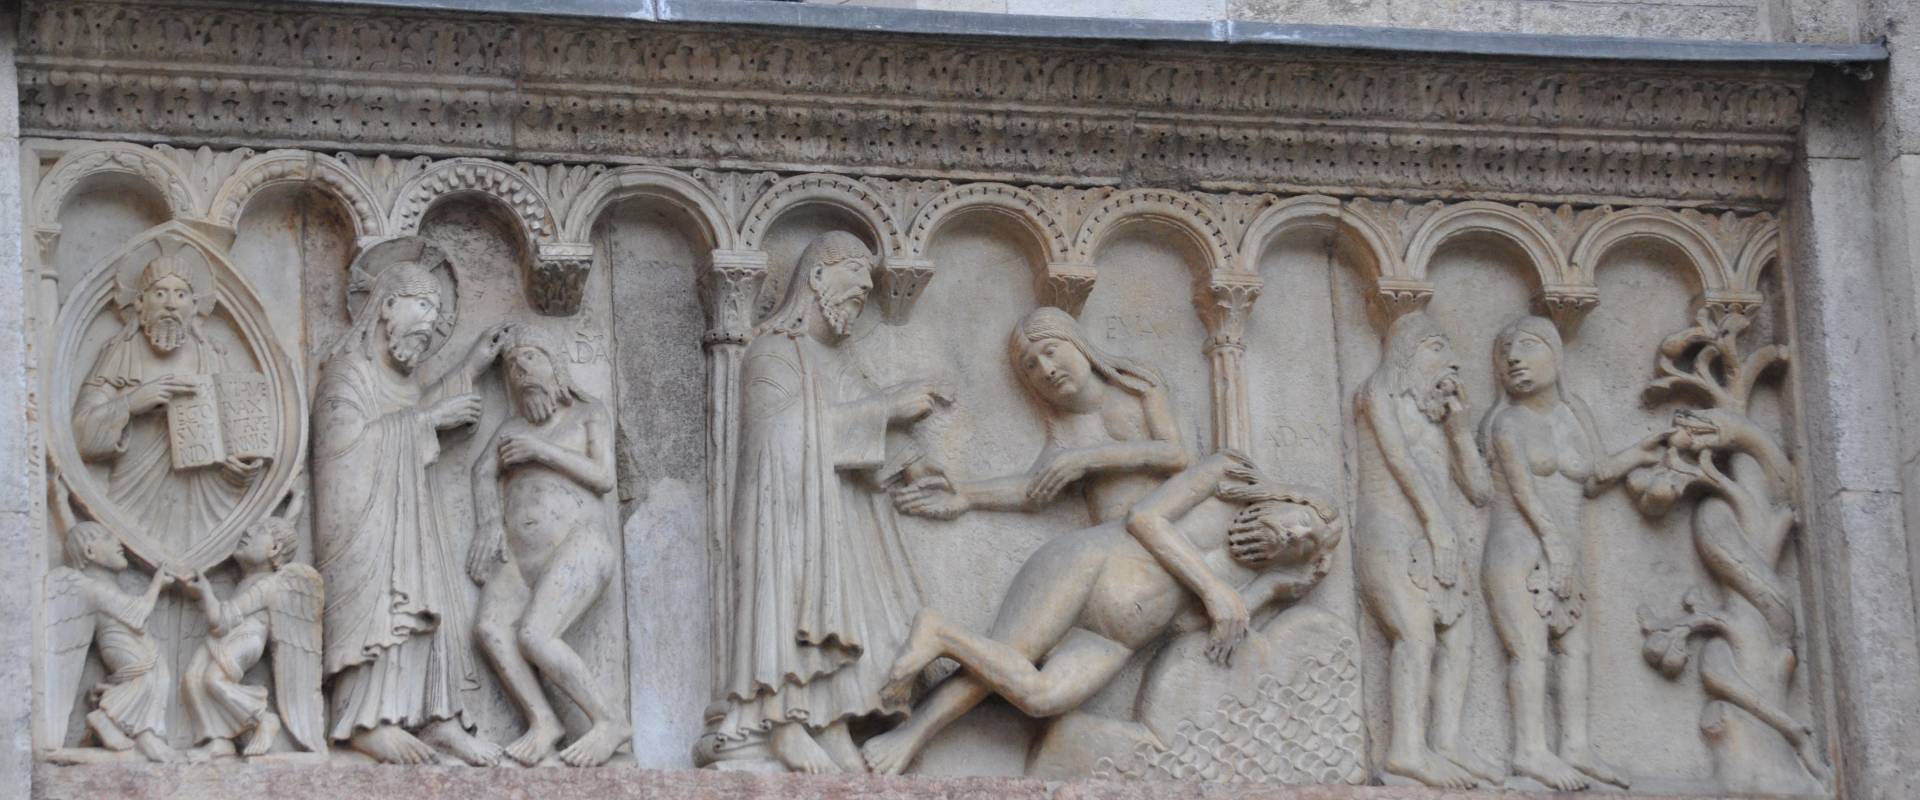 Duomo modena estero bassorilievo foto di Manesti